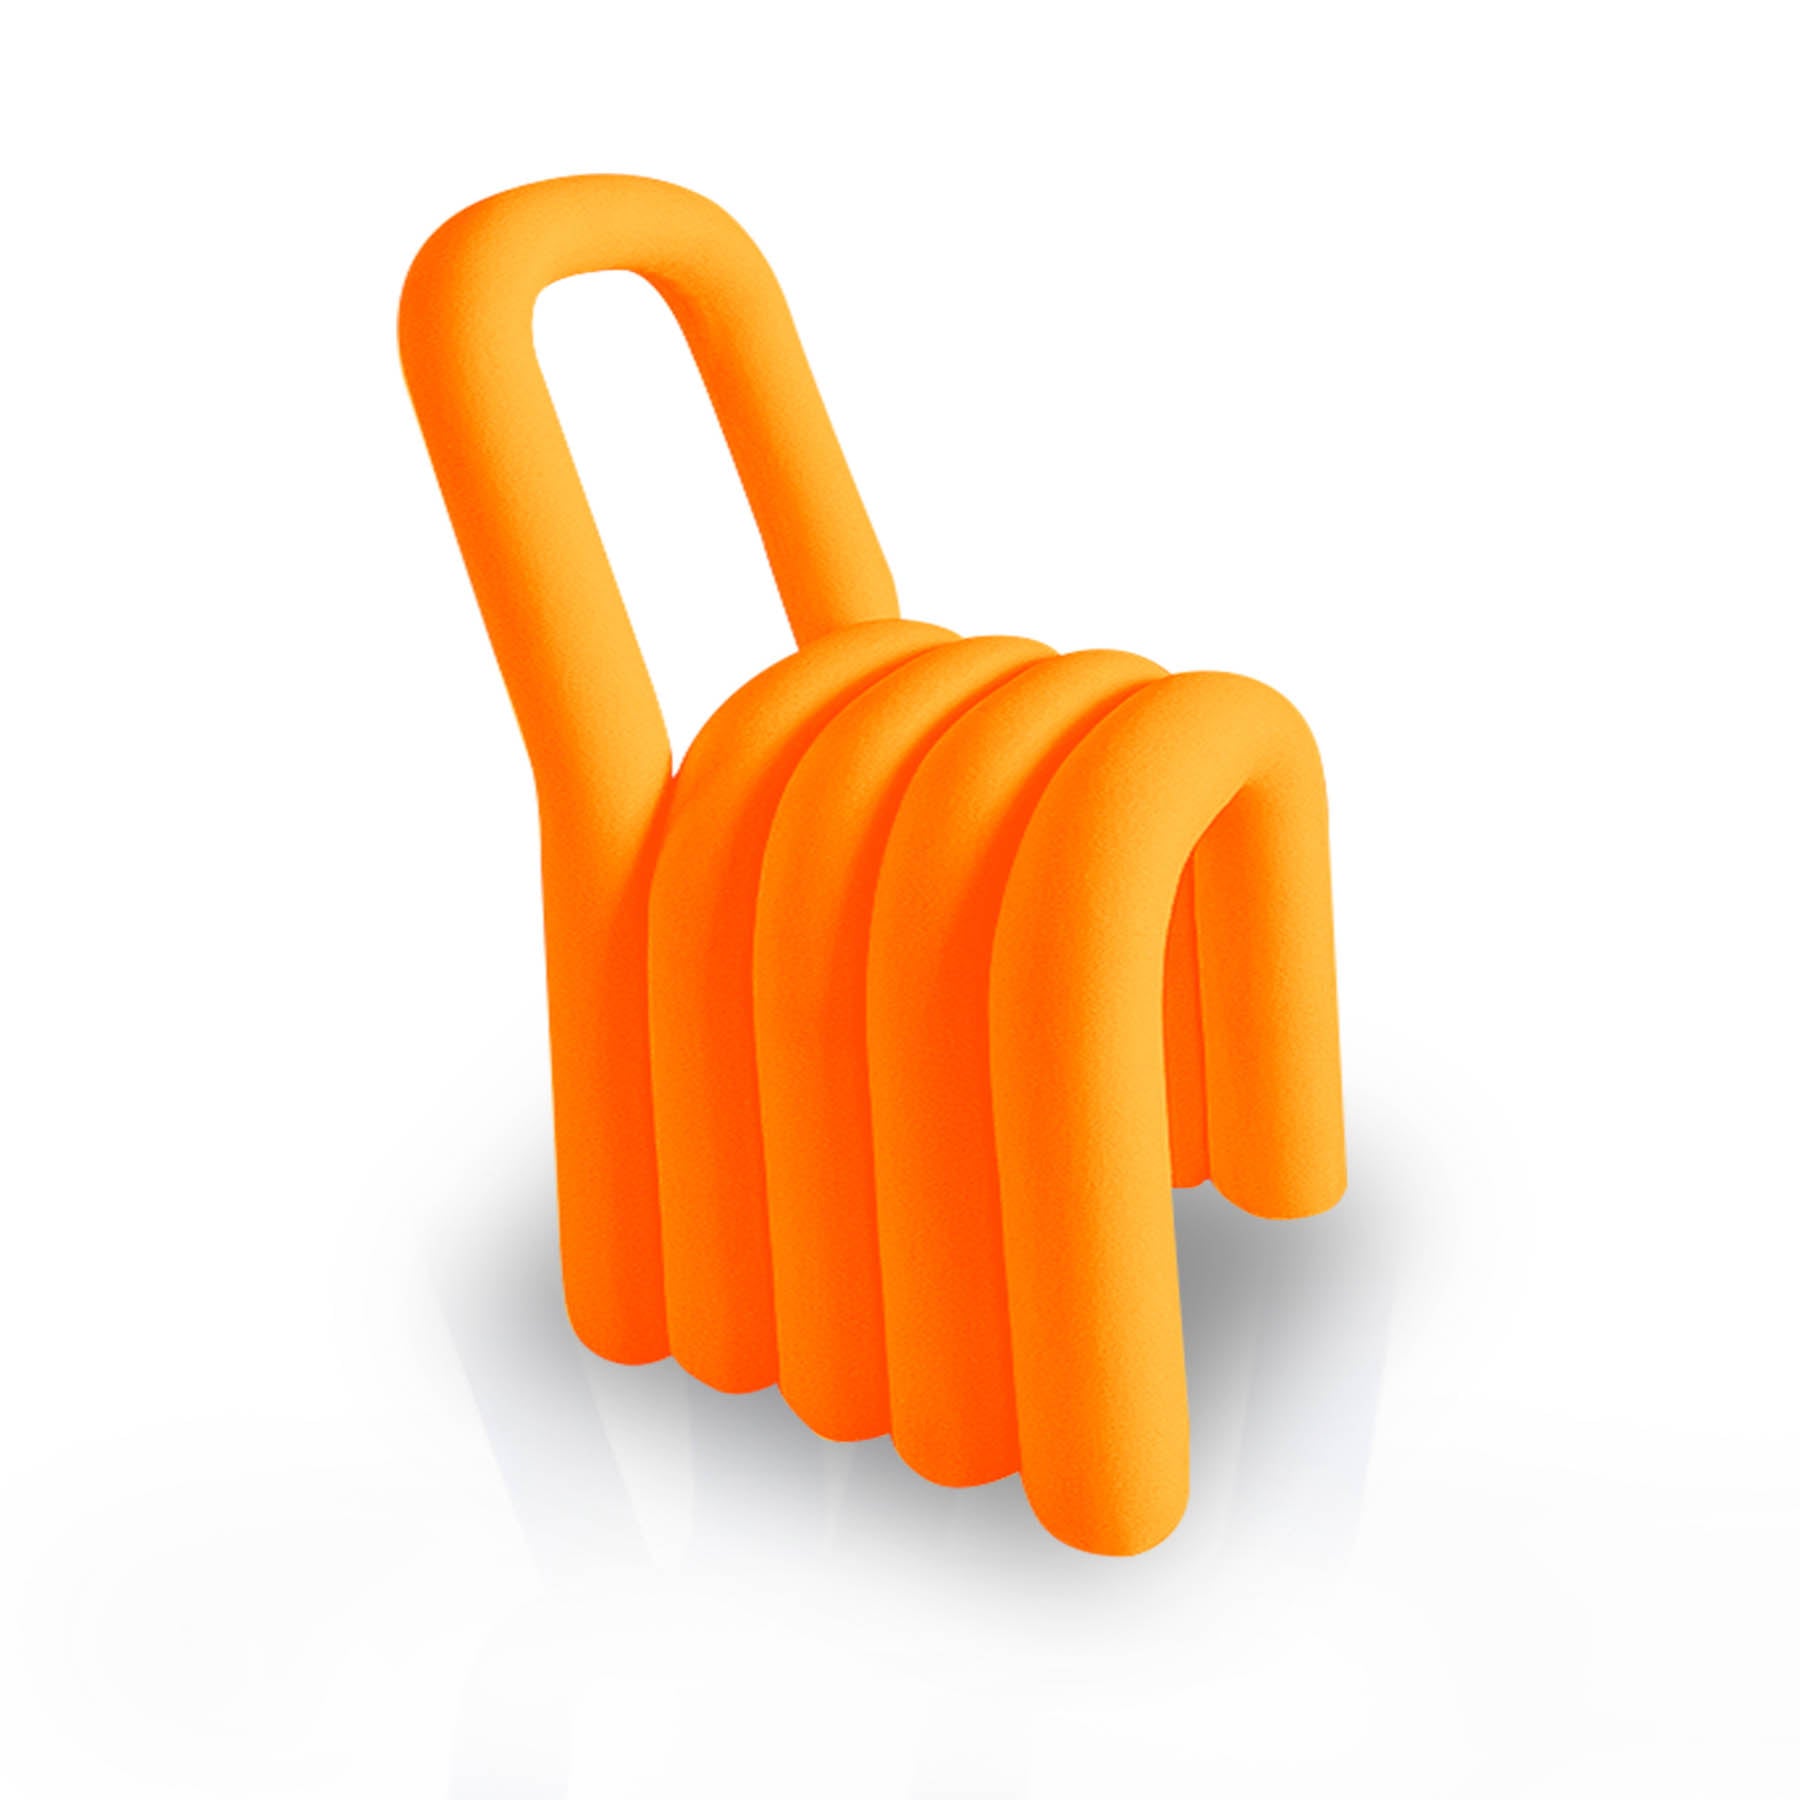 Replica Bold Chair - Orange